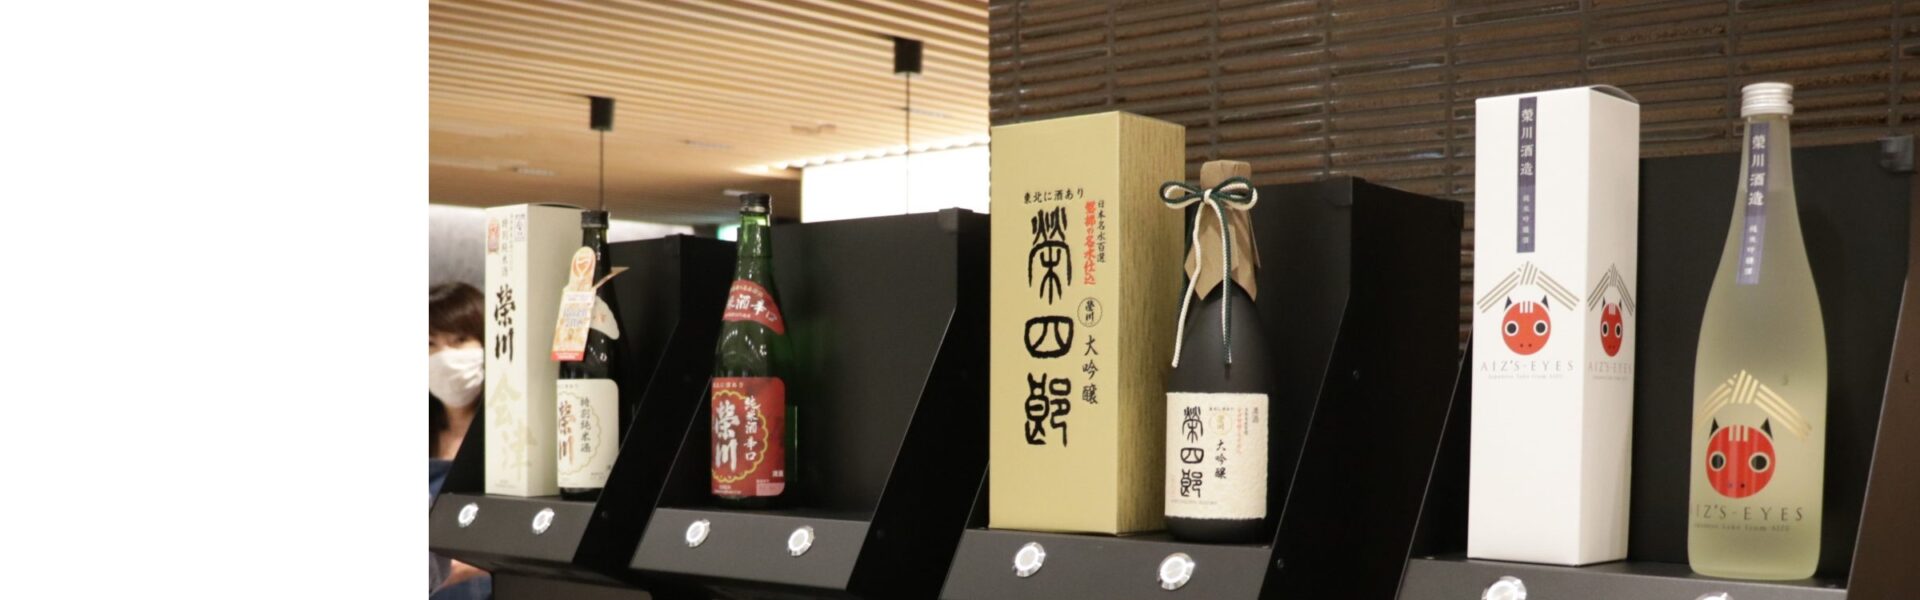 「地方創生エンタメ企画 ― 日本酒を盛り上げて地方創生に貢献しよう！」開催